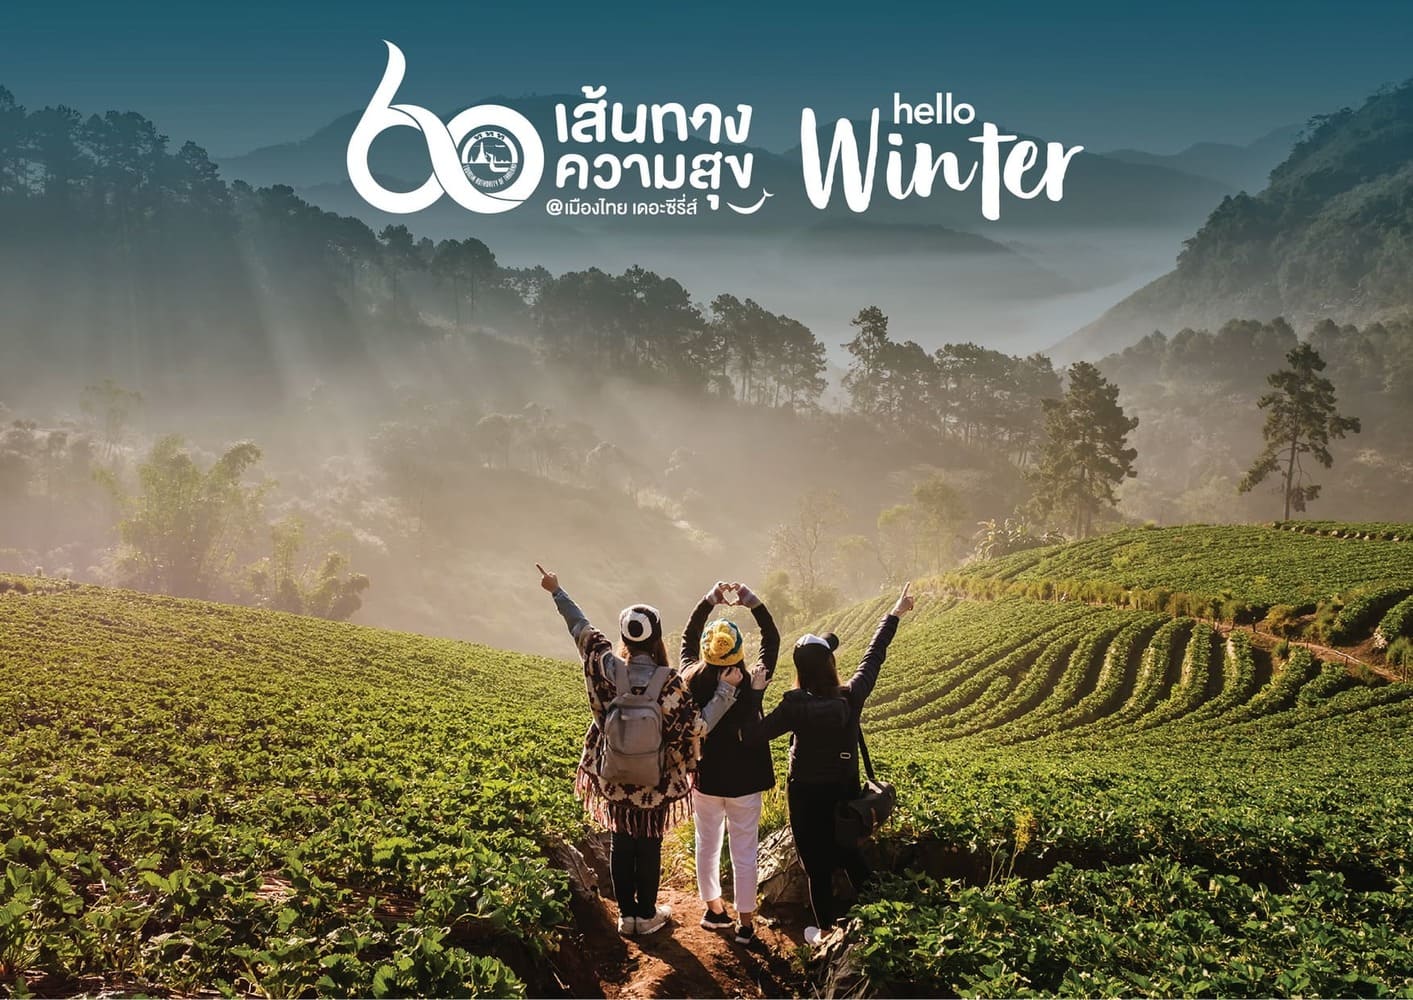 ททท. ฉลองครบรอบ 60 ปี เปิดตัวแคมเปญท่องเที่ยว 60 เส้นทางความสุข @ เมืองไทย เดอะ ซีรีส์ Hello Winter